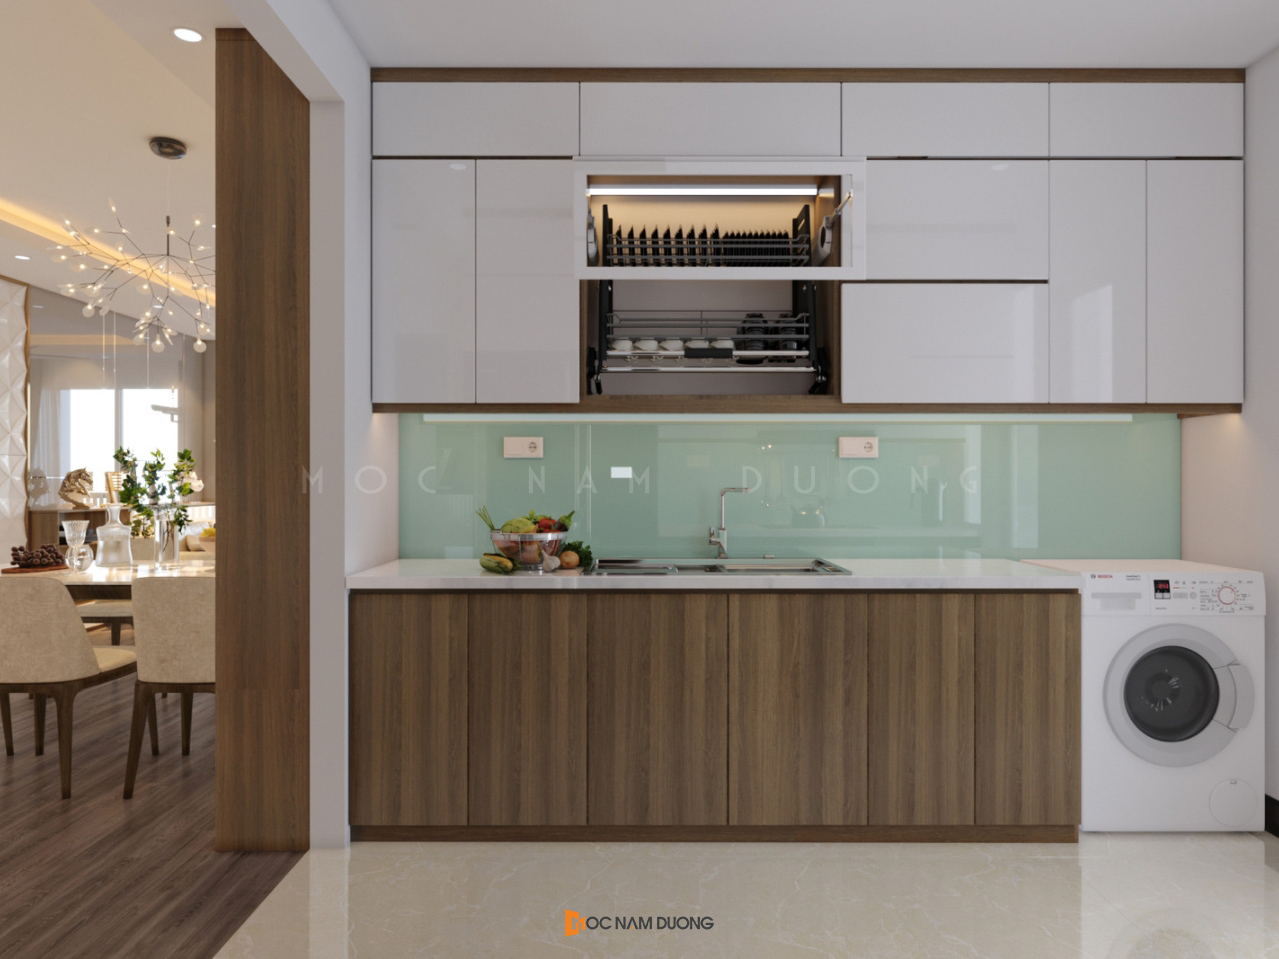 Những căn hộ nhỏ hẹp thì nên bố trí nội thất nhà bếp chung cư với không gian mở